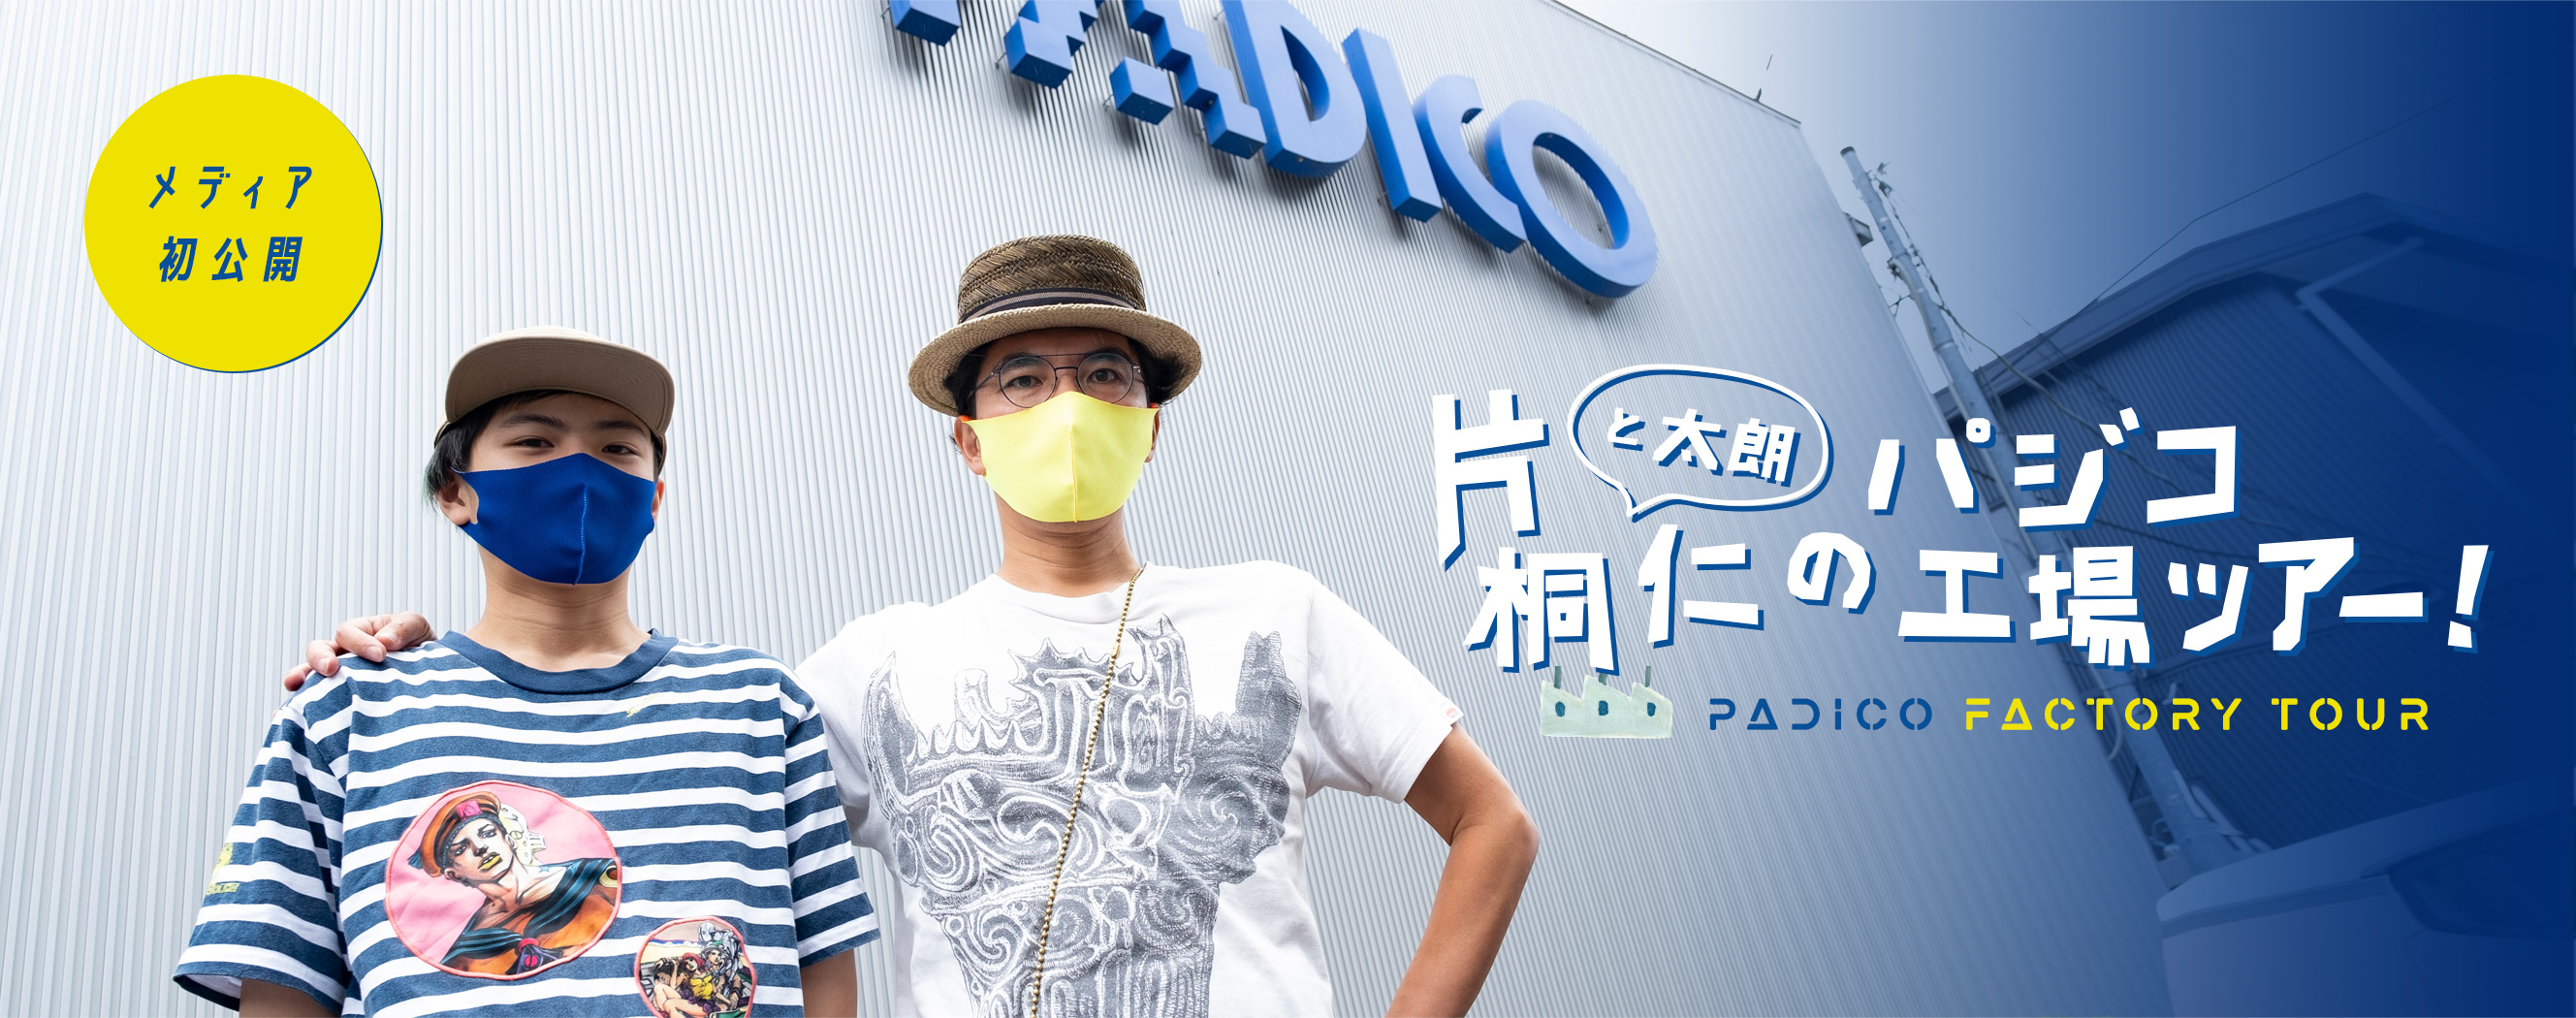 片桐仁と太郎のパジコ工場ツアー